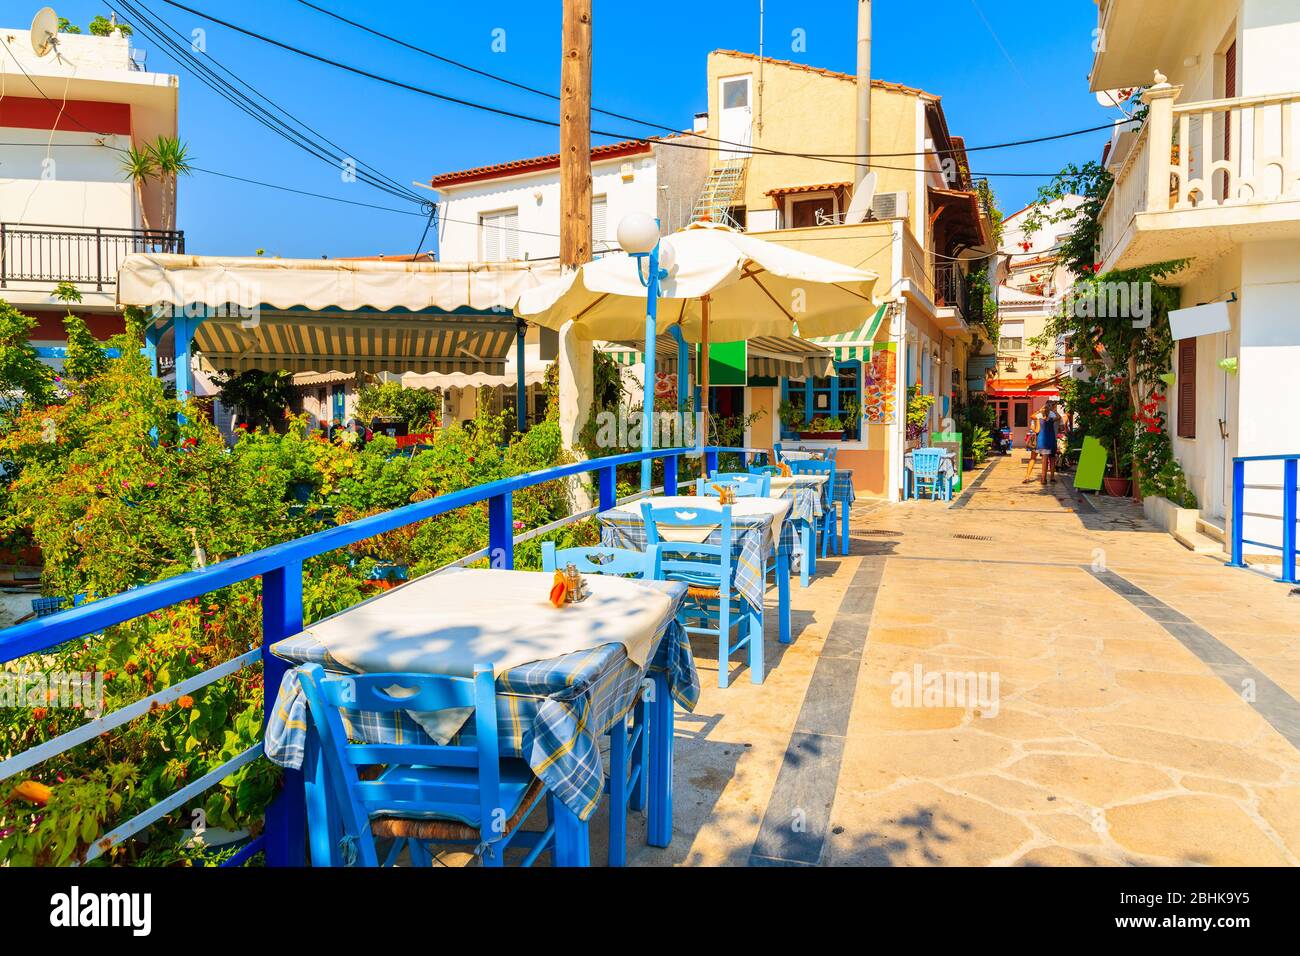 Mesas con sillas en la taberna griega tradicional en la calle de la ciudad de Kokkari, Grecia Foto de stock